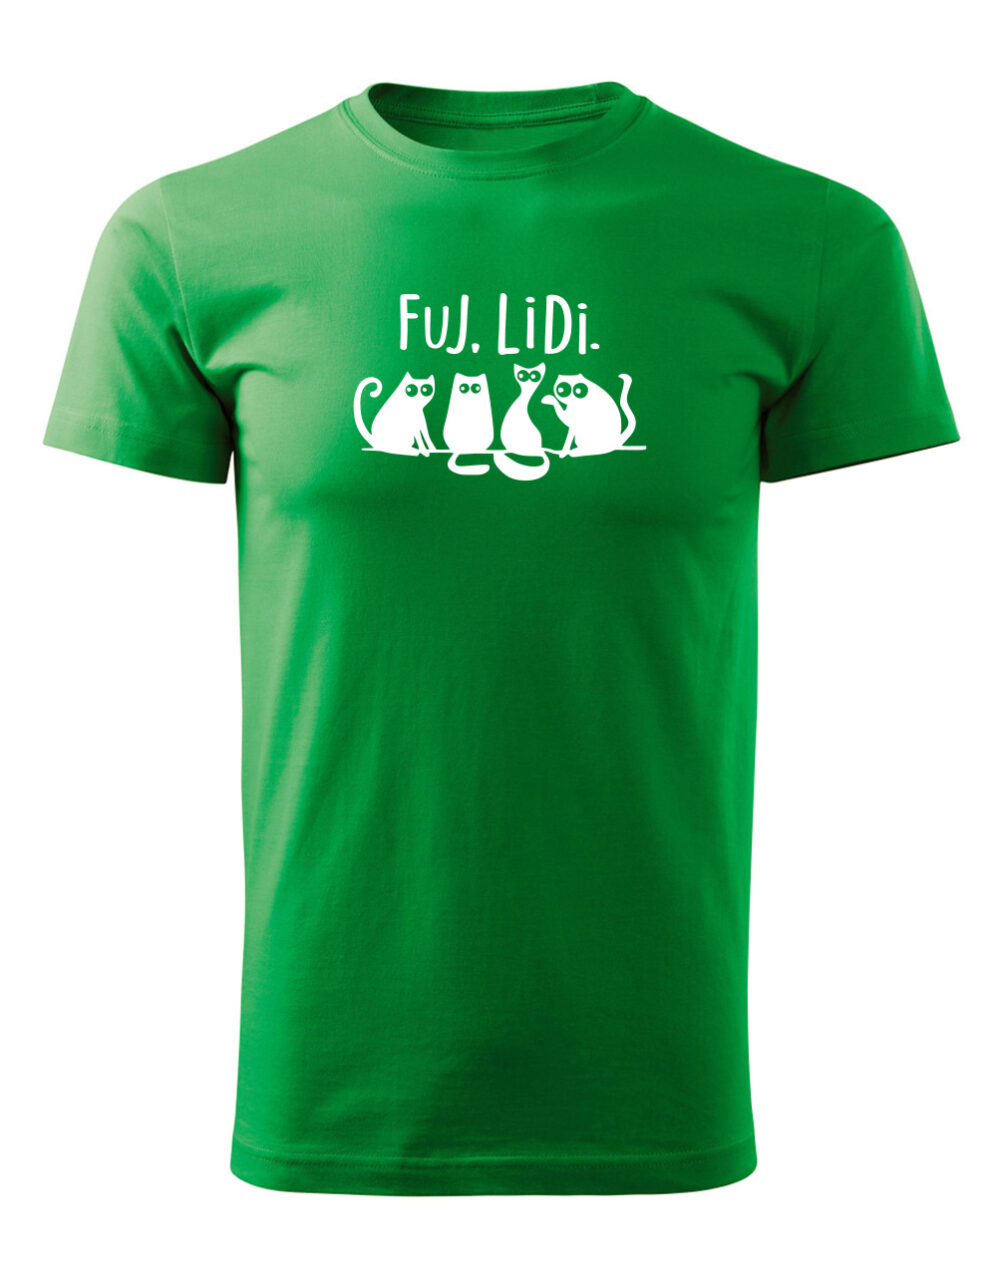 Pánské tričko s potiskem Fuj lidi světle zelená